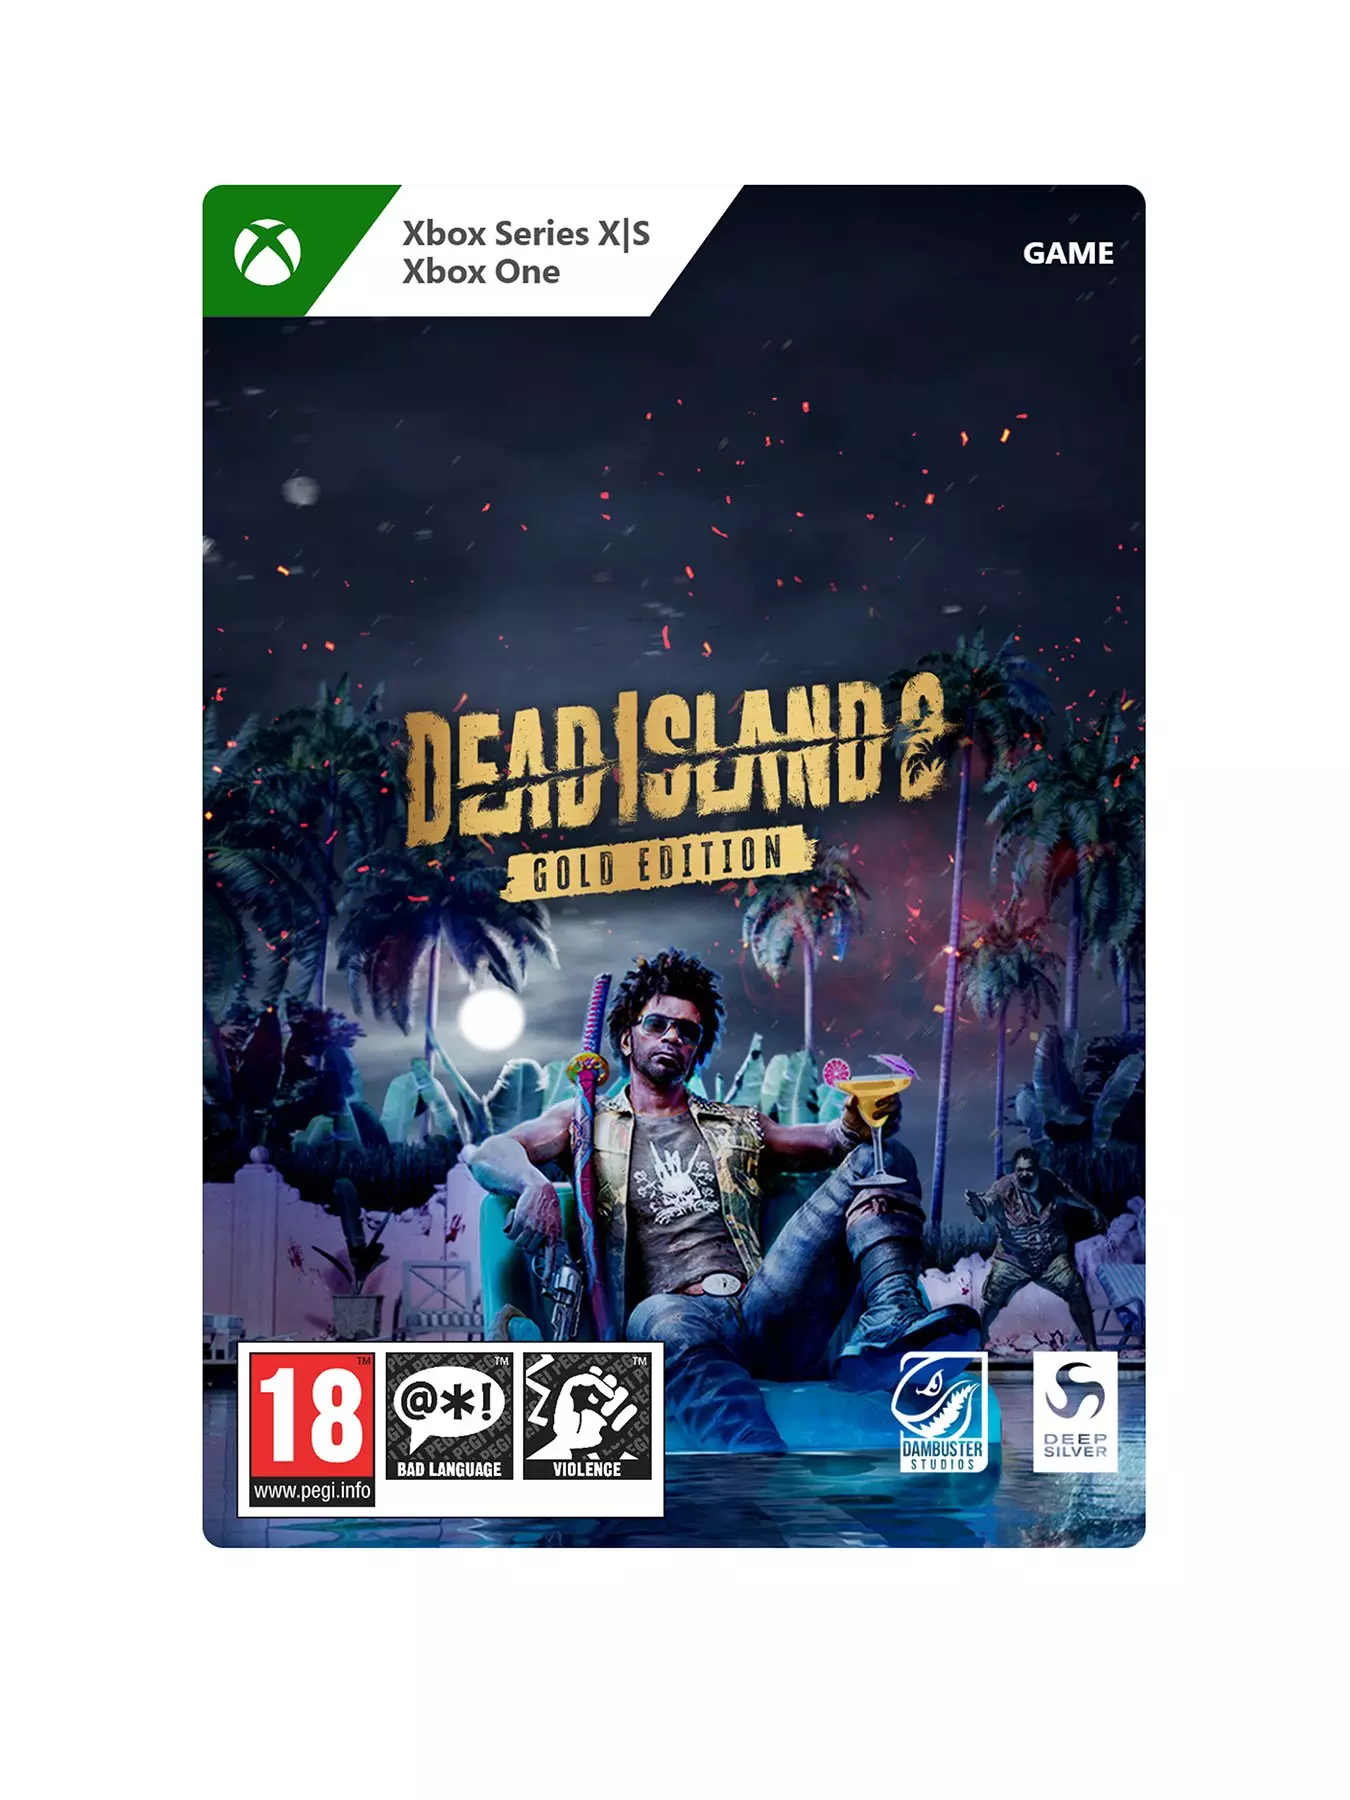 Dead Island invadirá a Xbox LIVE com roupas para seu Avatar